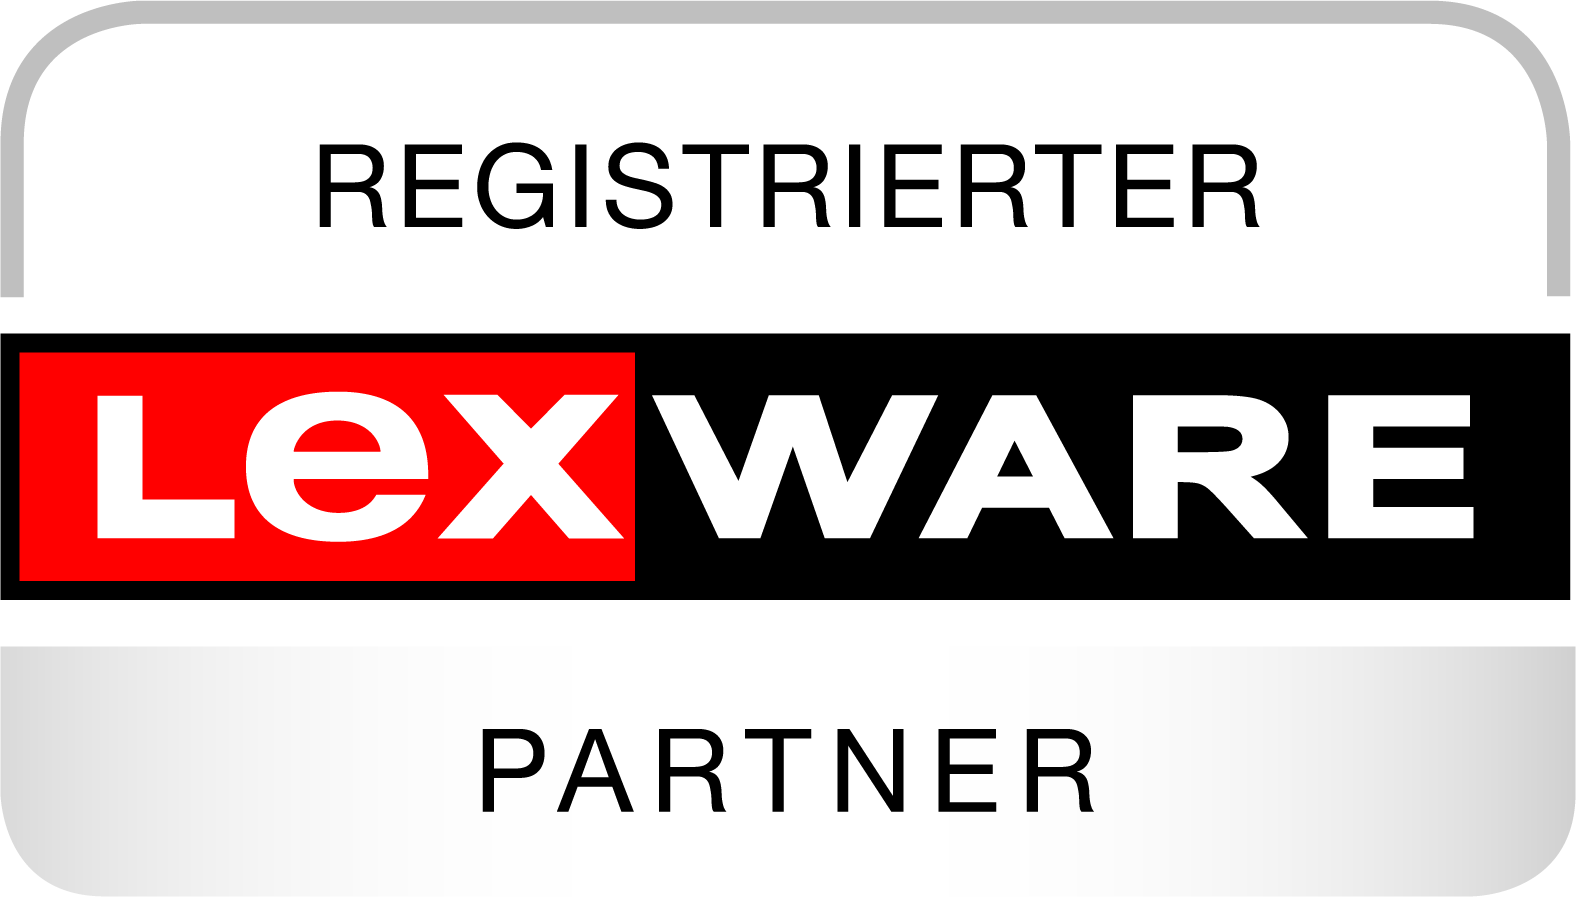 Registrierter Lexware Partner